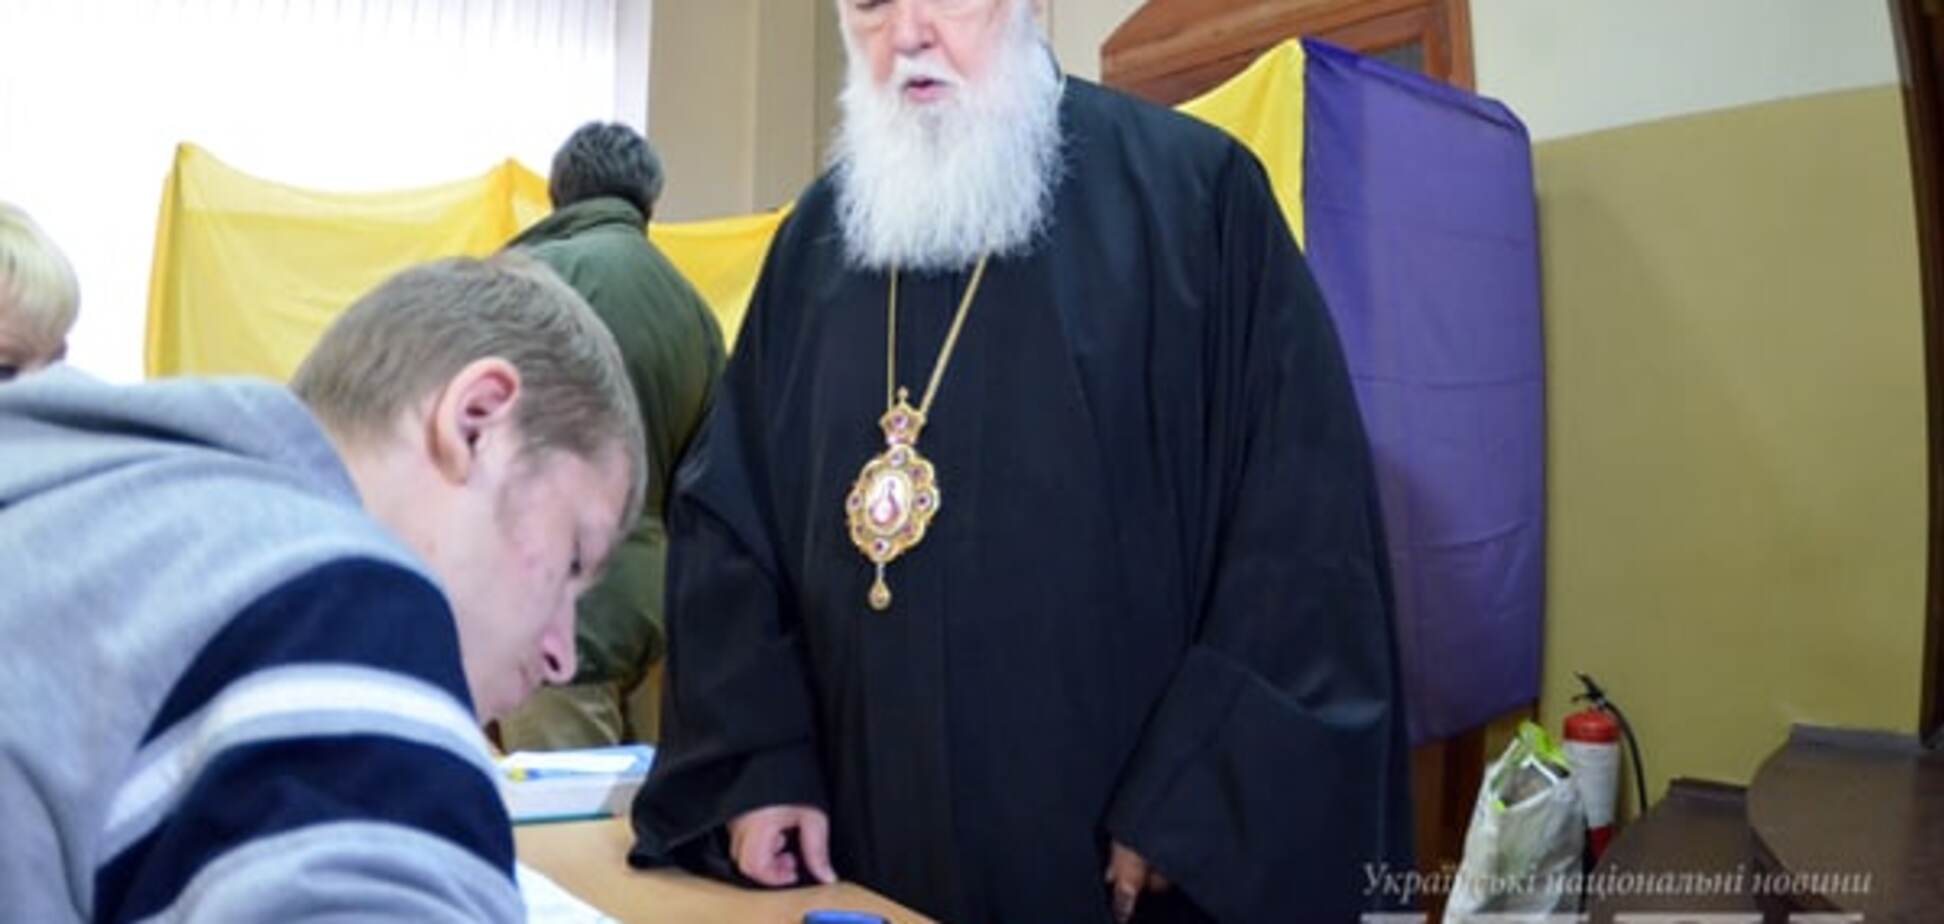 Патриарх Филарет одним из первых проголосовал на выборах: опубликованы фото и видео